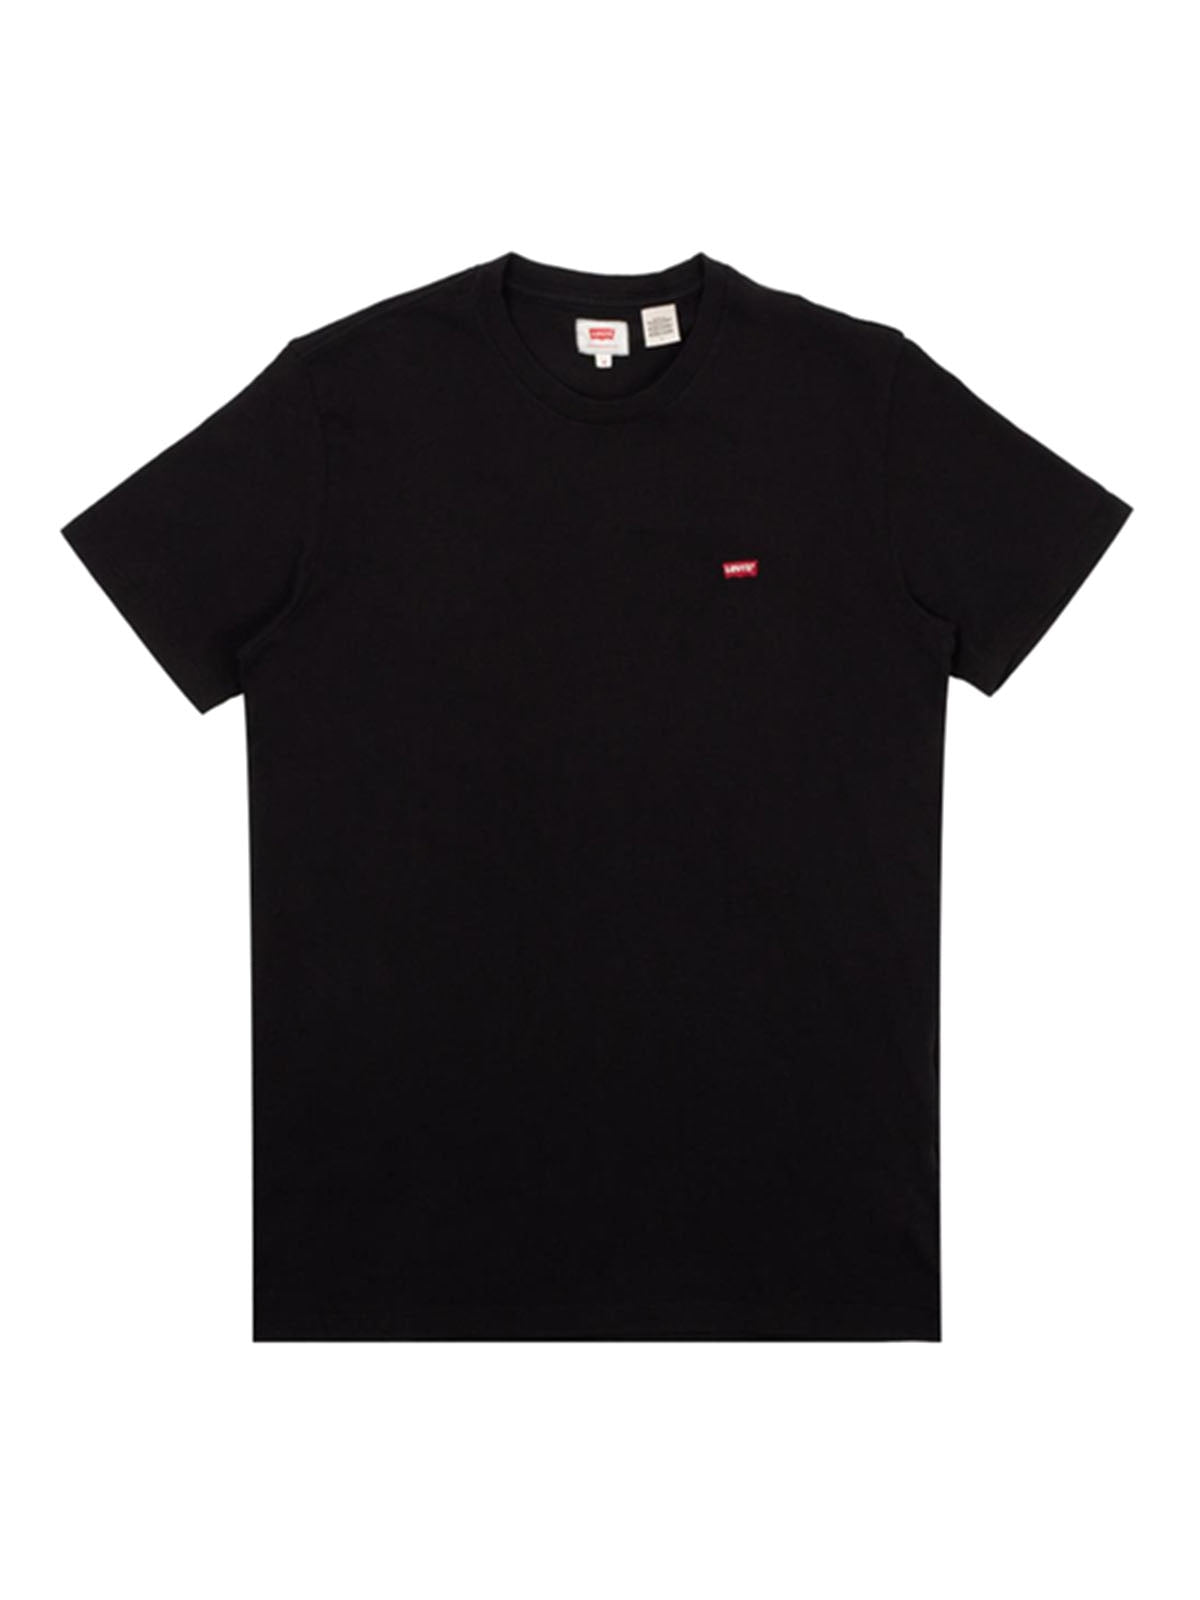 T-shirt Uomo Levi's - T-Shirt Housemark Original - Nero